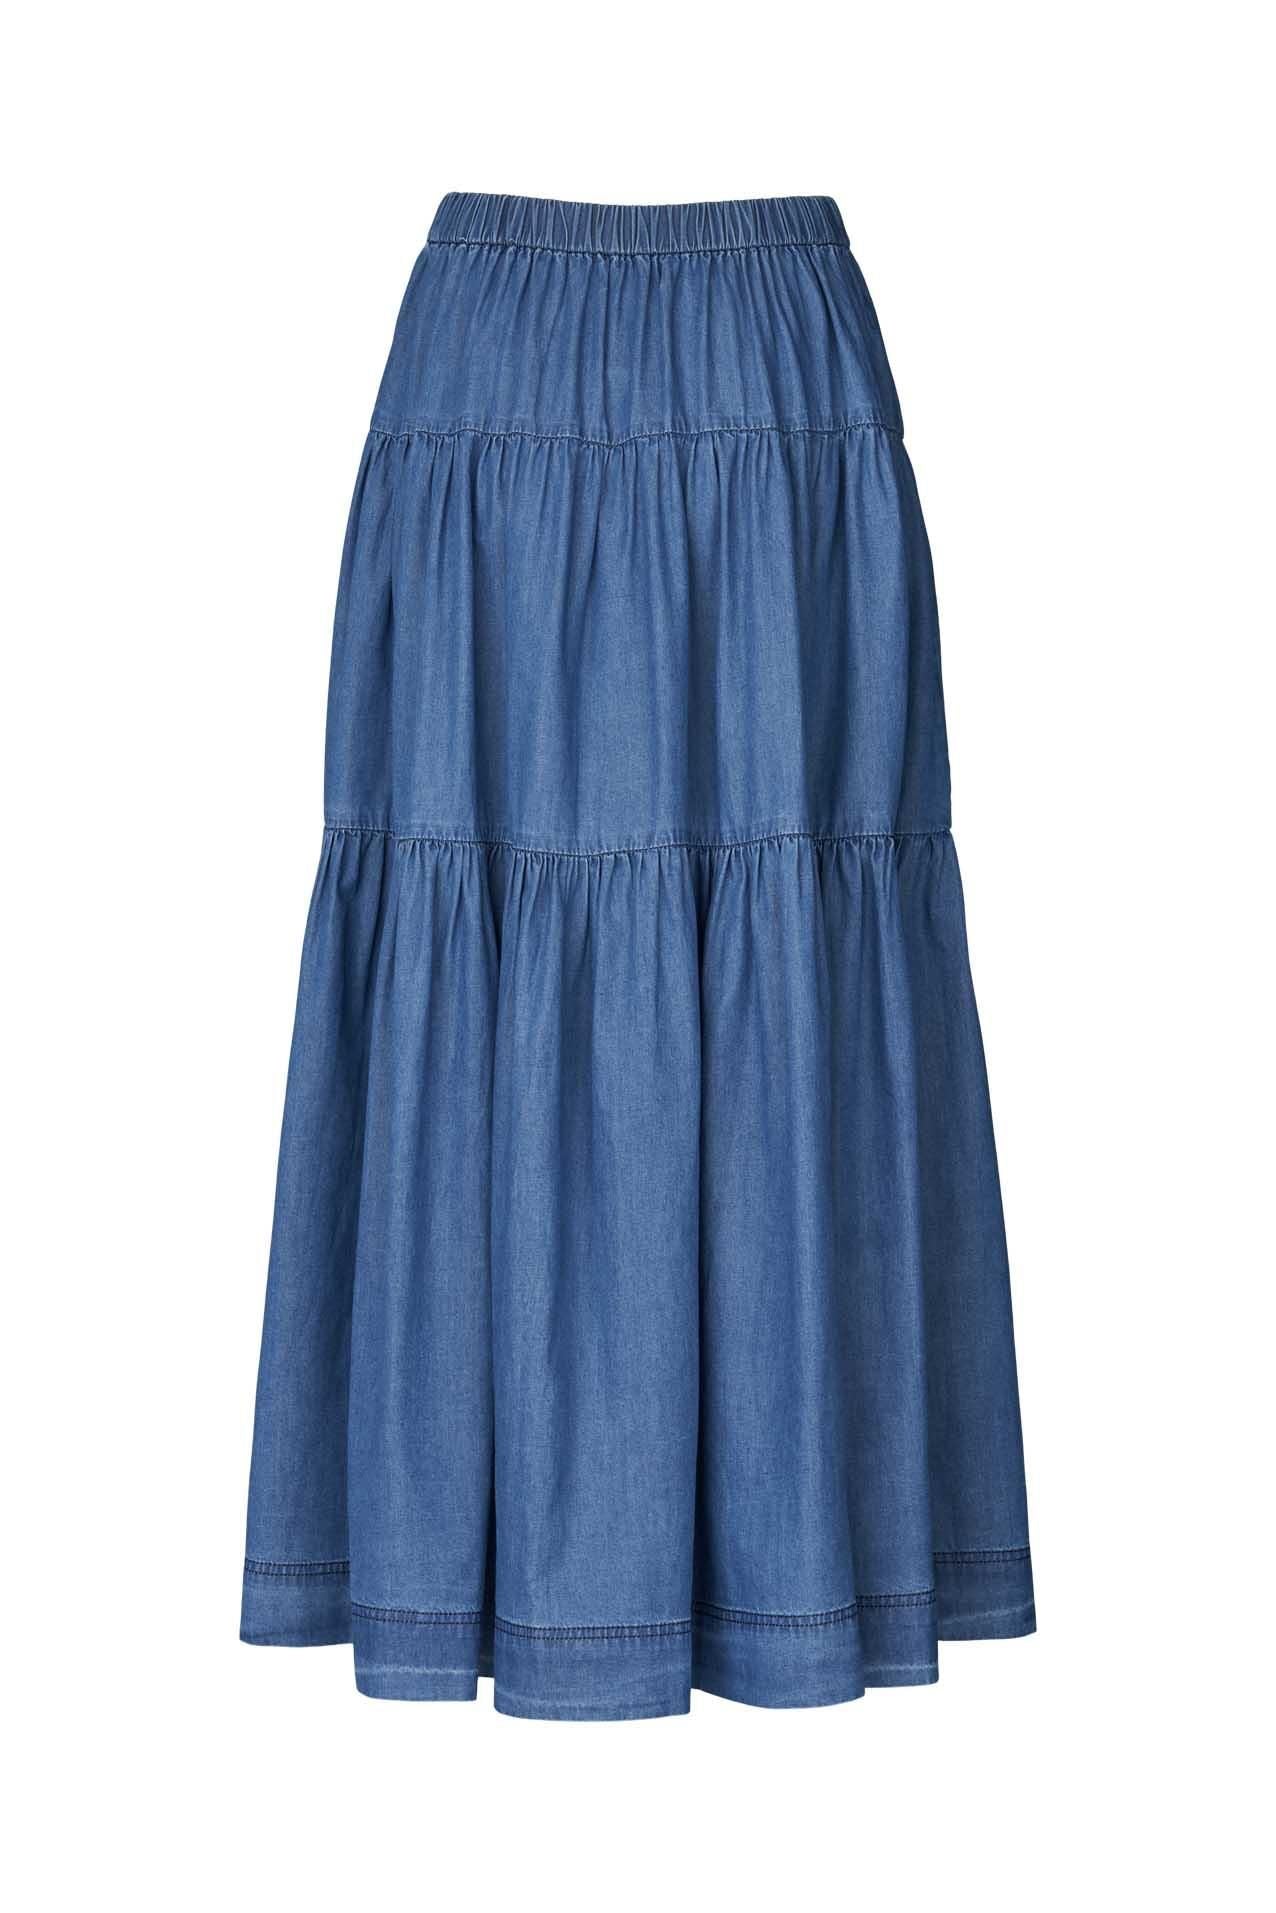 Sunset Skirt Blue Lollys Laundry